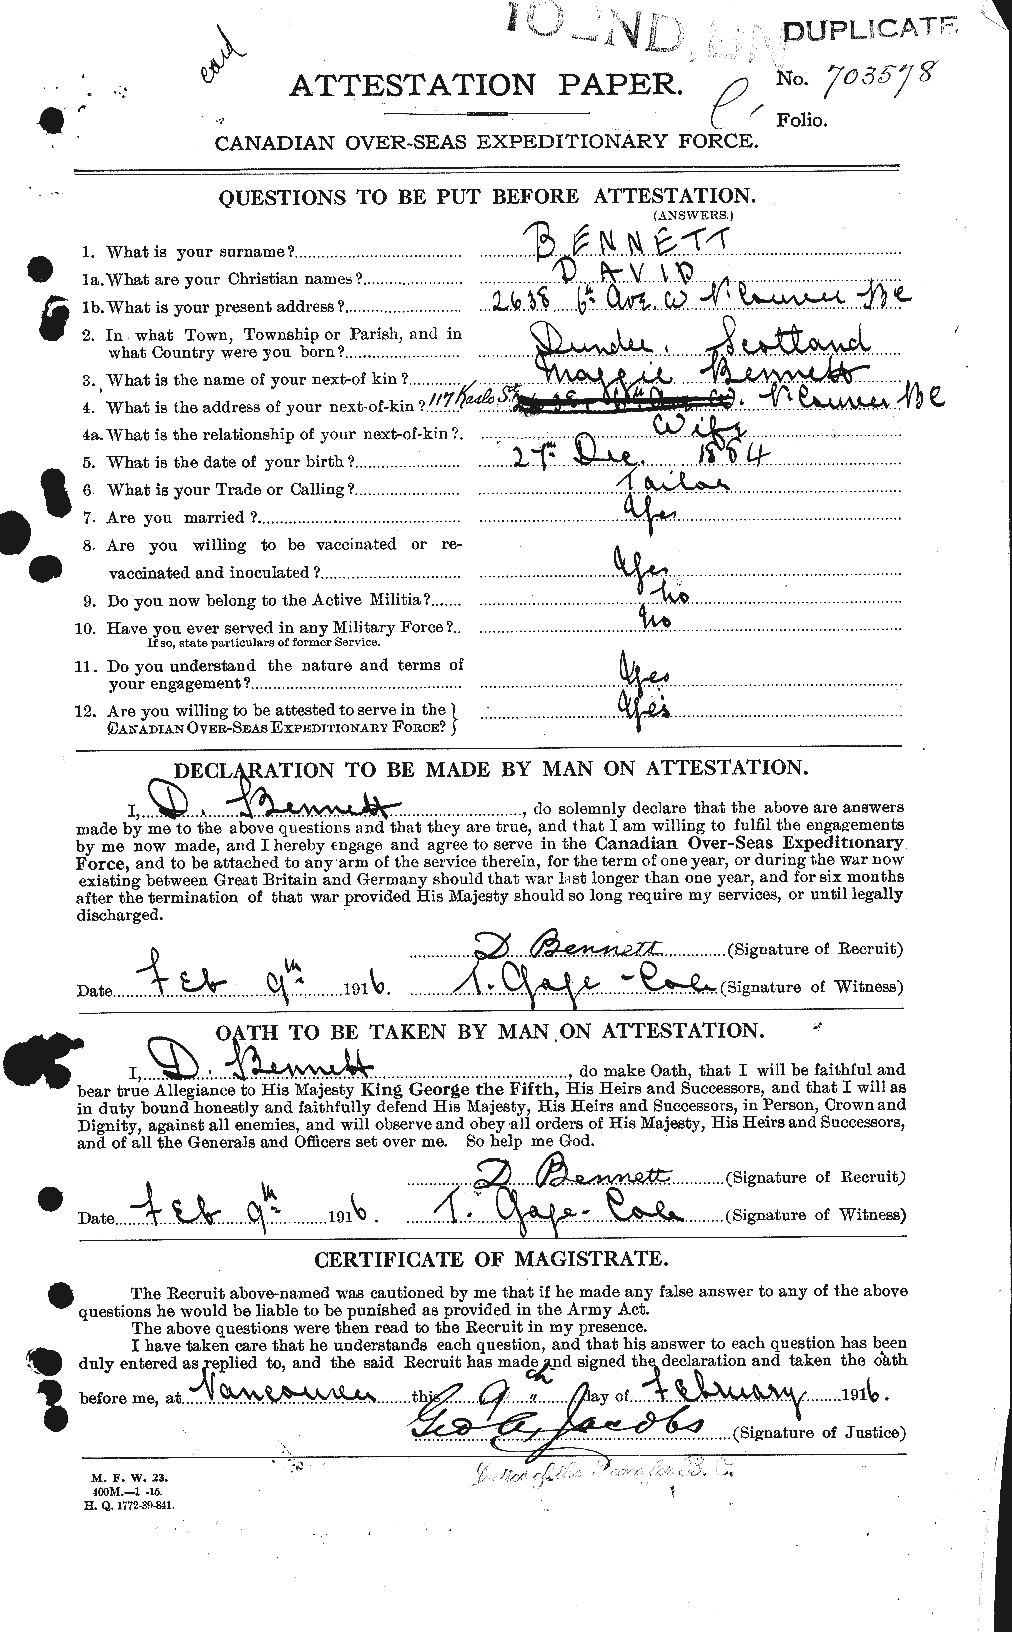 Dossiers du Personnel de la Première Guerre mondiale - CEC 233434a